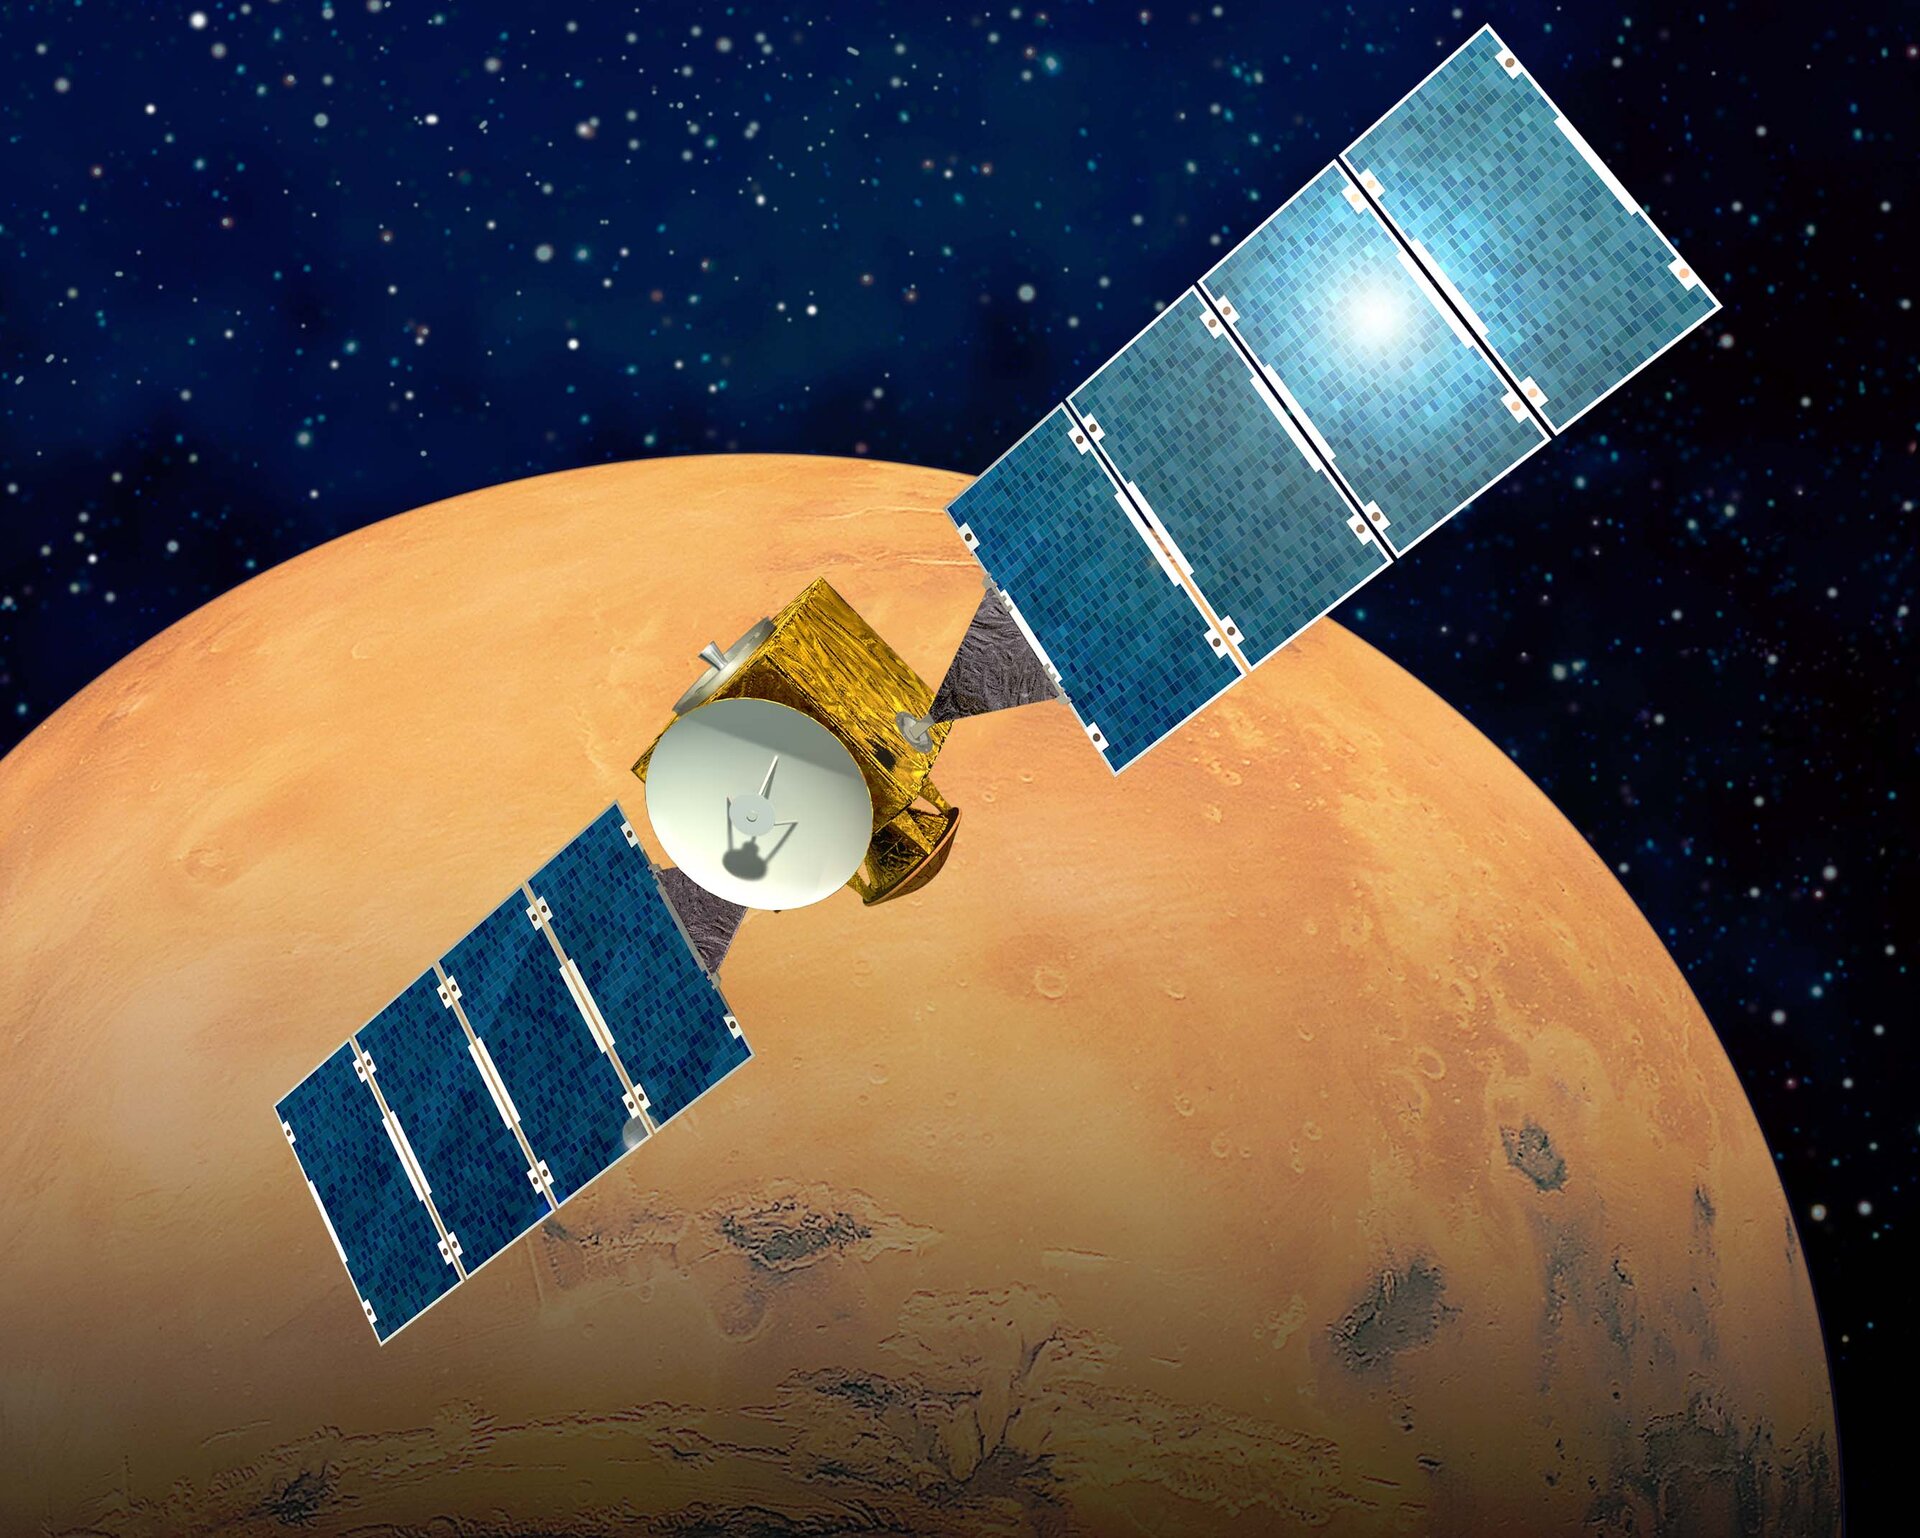 Mars Express, lancering voorzien in juni 2003